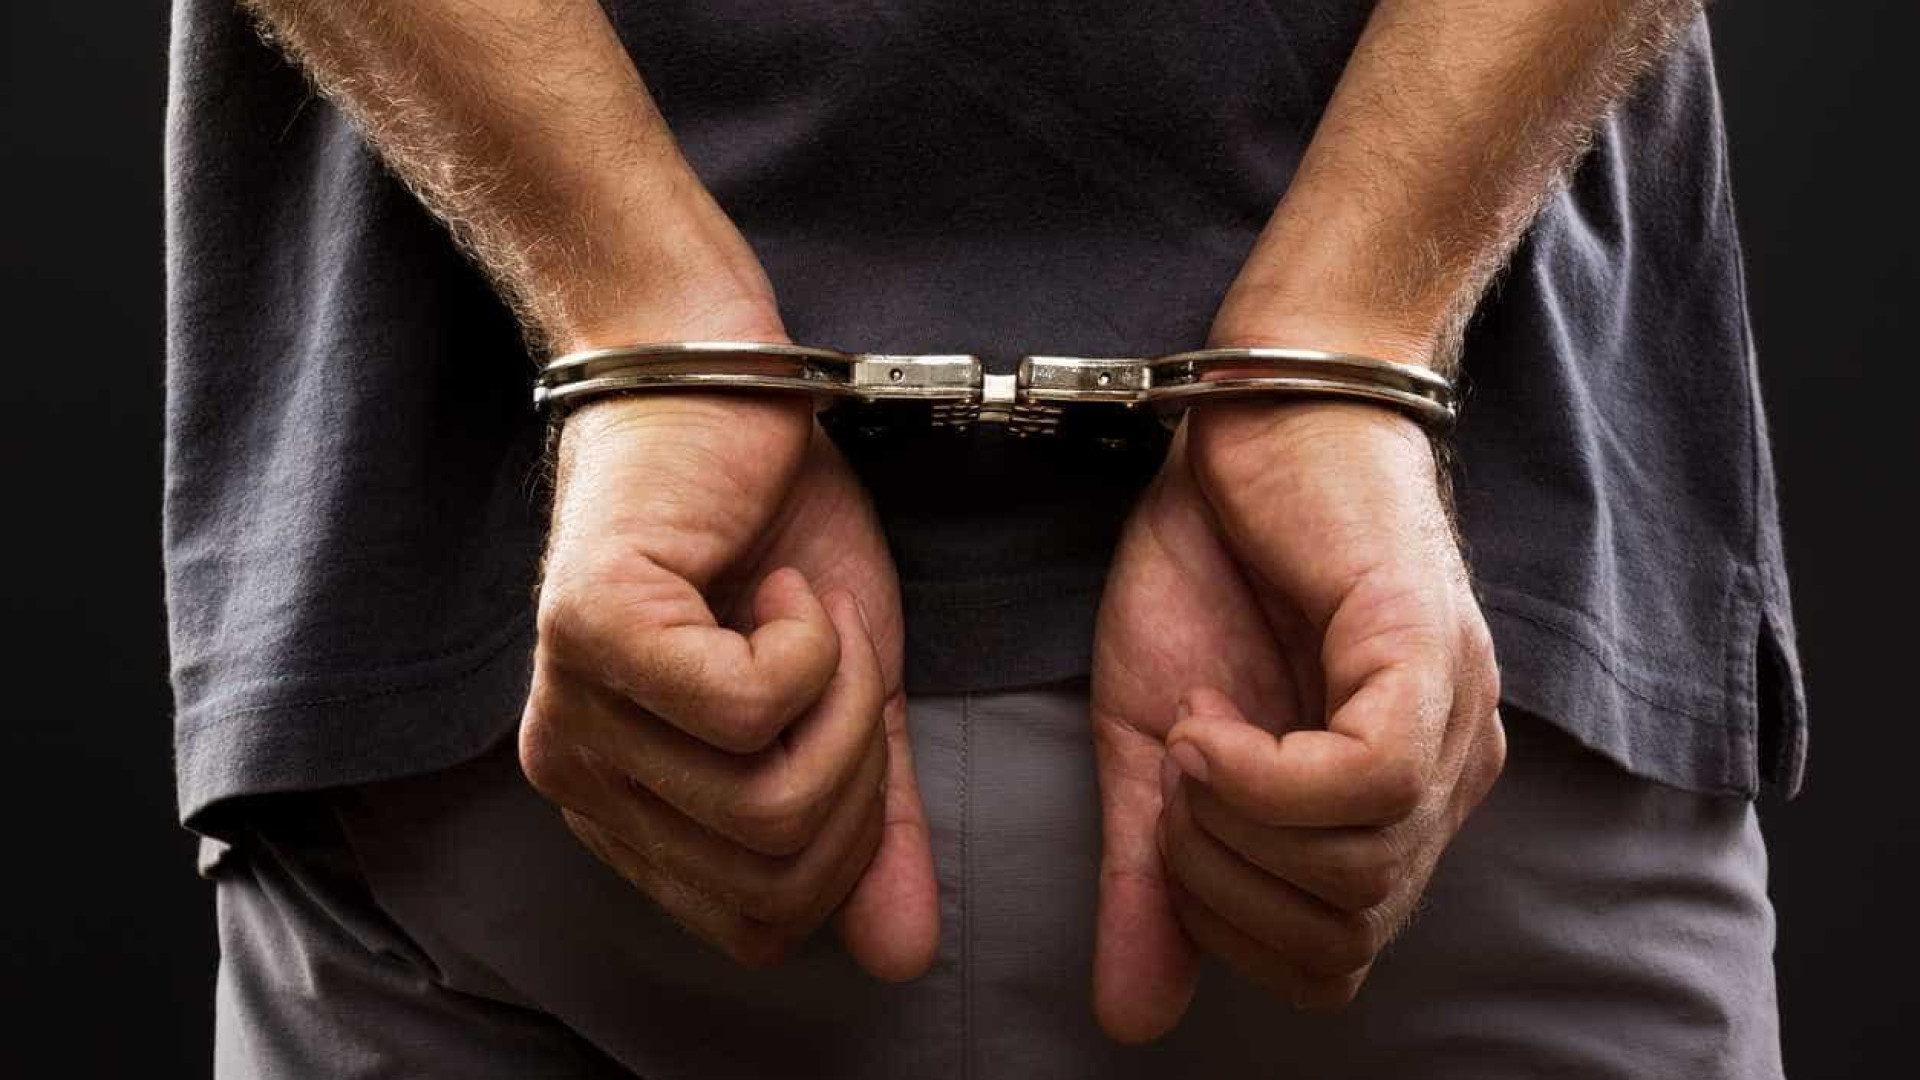 Suspeito de furtar 1.500 testes de Covid é preso em SP